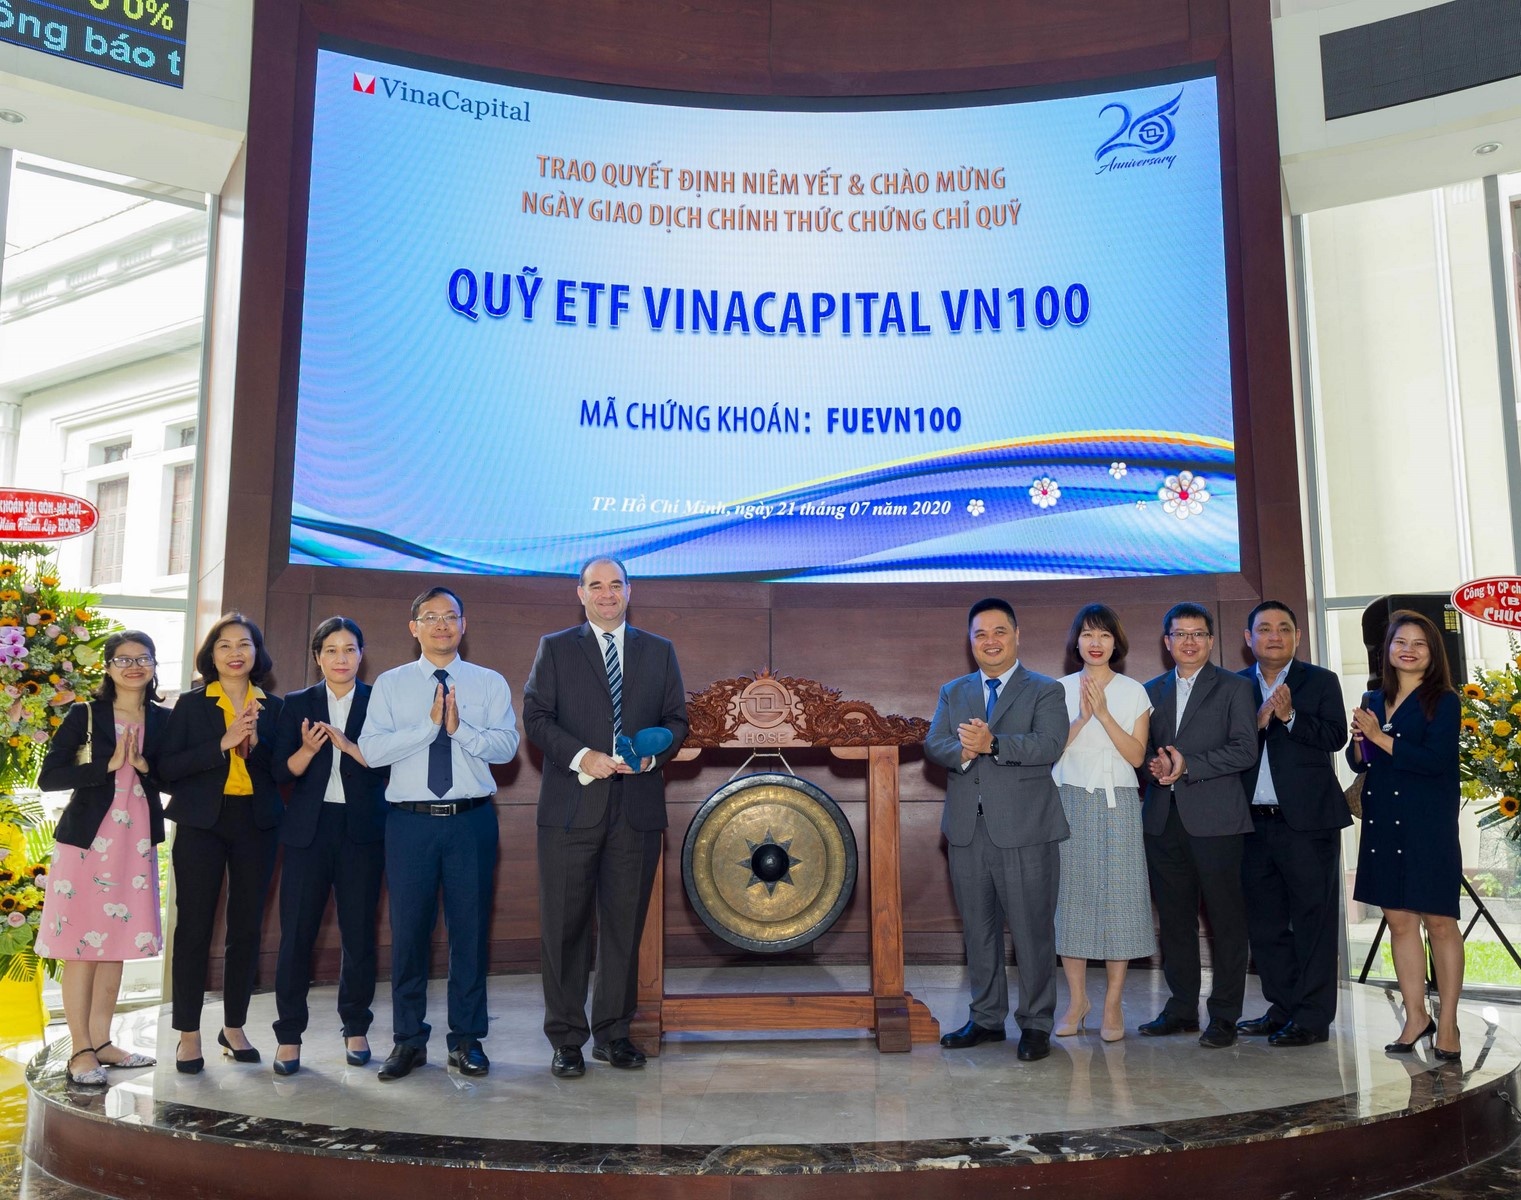 Quỹ ETF VinaCapital VN100 chính thức niêm yết tại HOSE